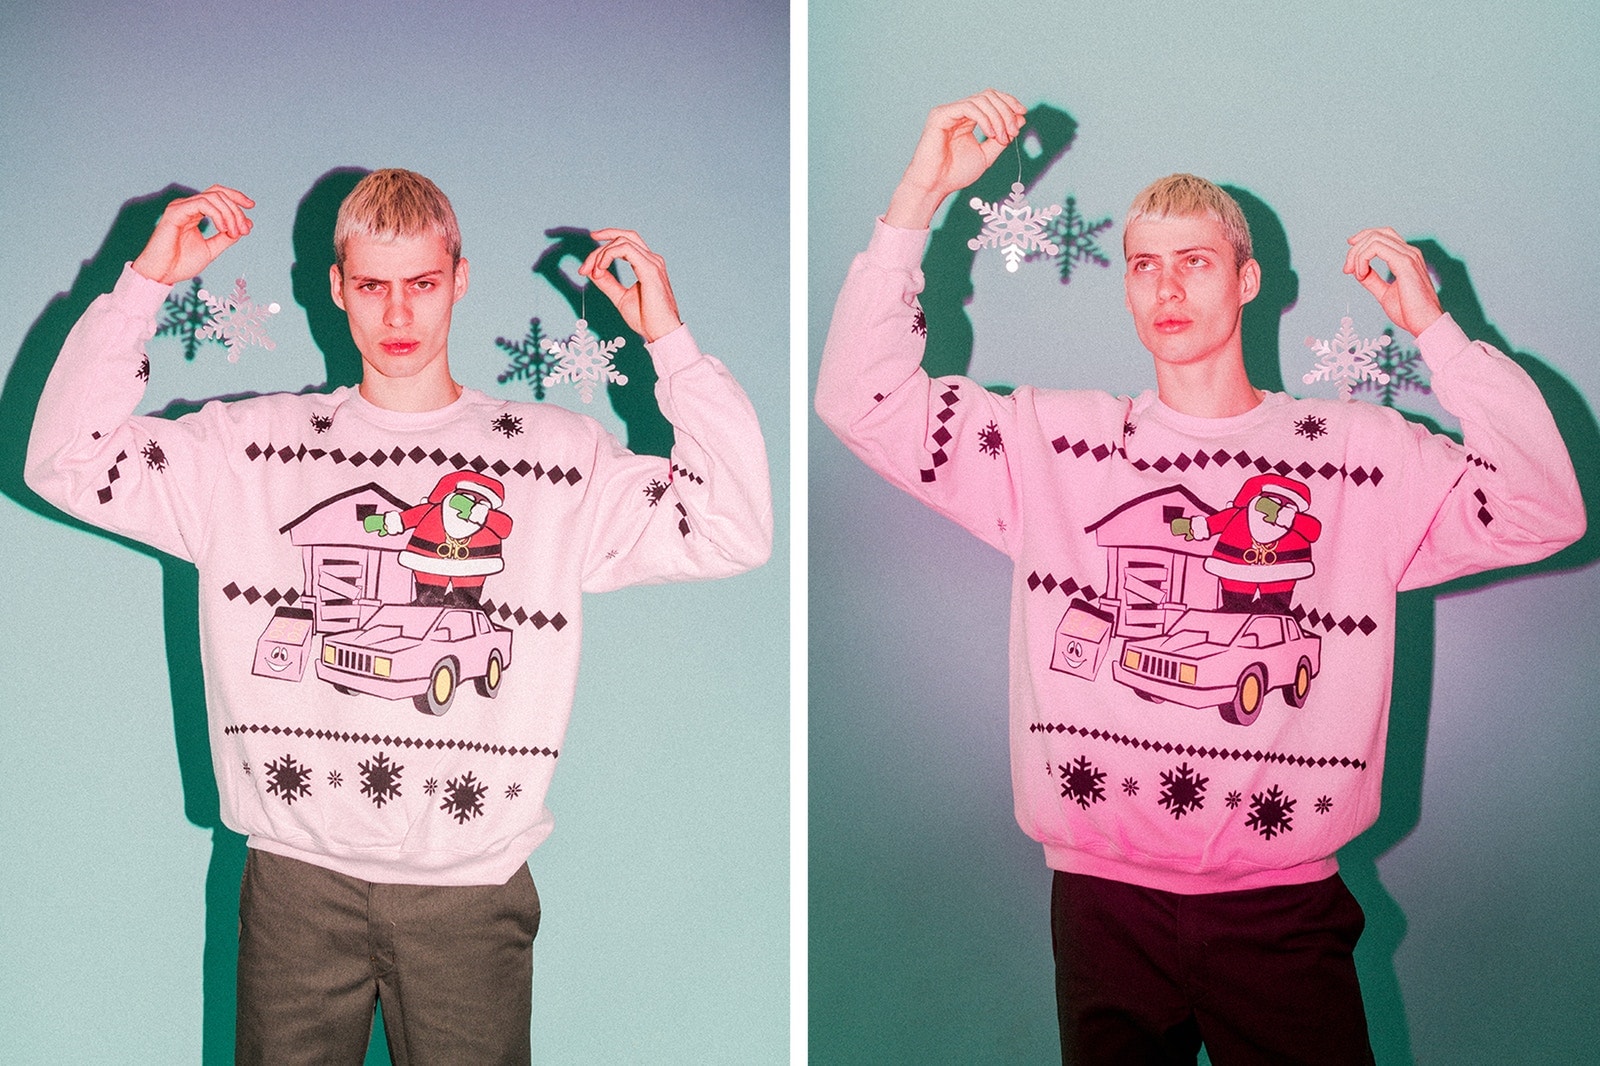 <하입비스트> 에디토리얼 - 어글리 크리스마스 스웨터 특집 2017 hypebeast ugly christmas sweaters